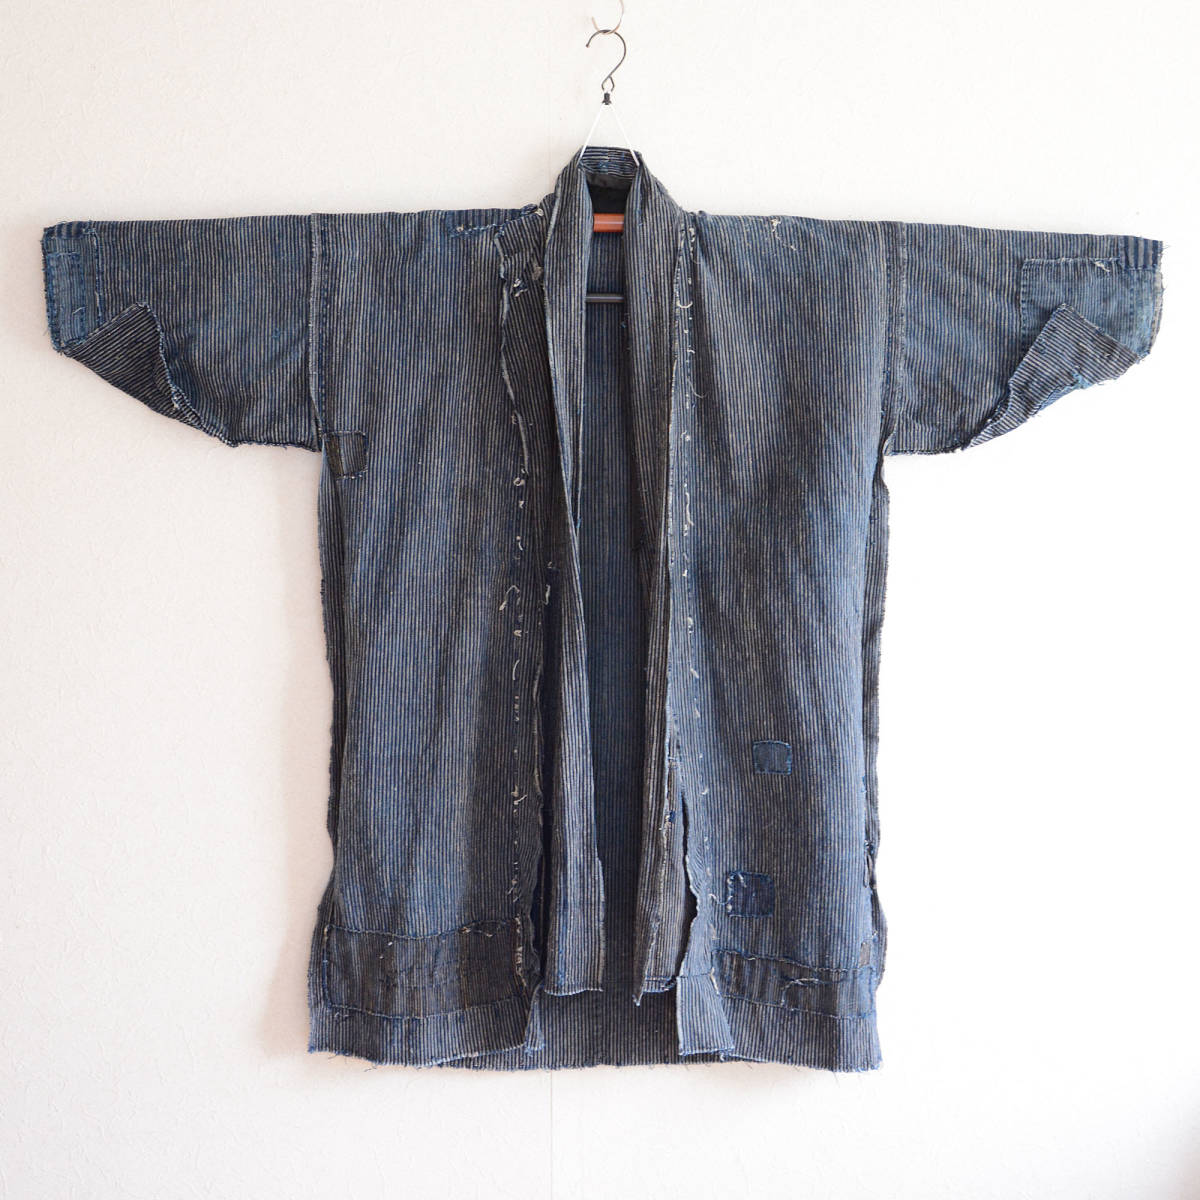 襤褸野良着綿入れ半纏藍染着物ジャケット木綿縞模様ジャパンヴィンテージリメイク素材明治大正昭和 boro noragi jacket hanten kimono